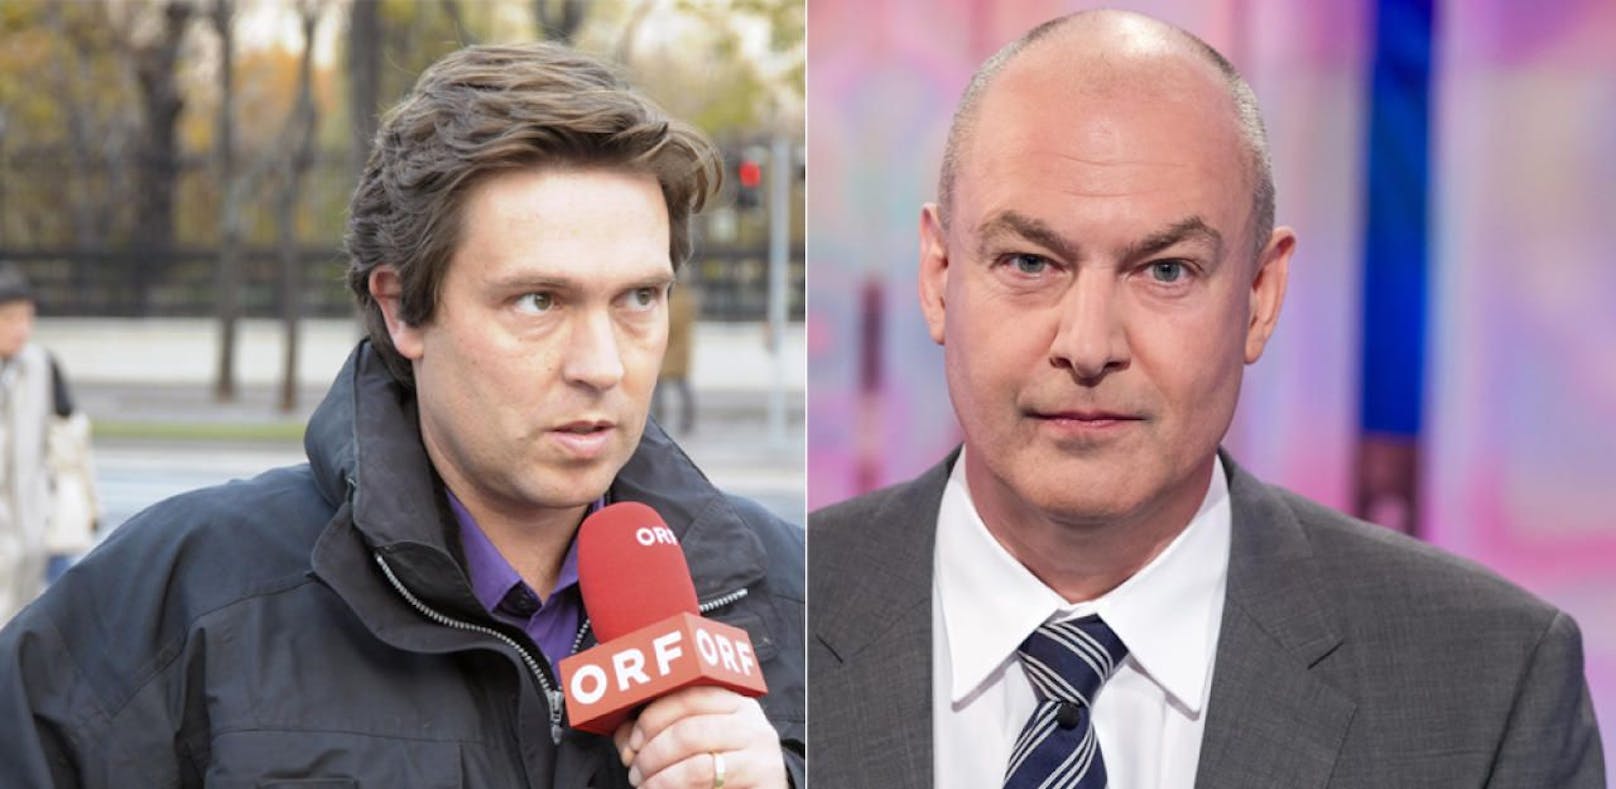 Die neuen Channelmanager des ORF: Links Matthias Schrom für ORF2, rechts Wolfgang Geier für ORF eins.